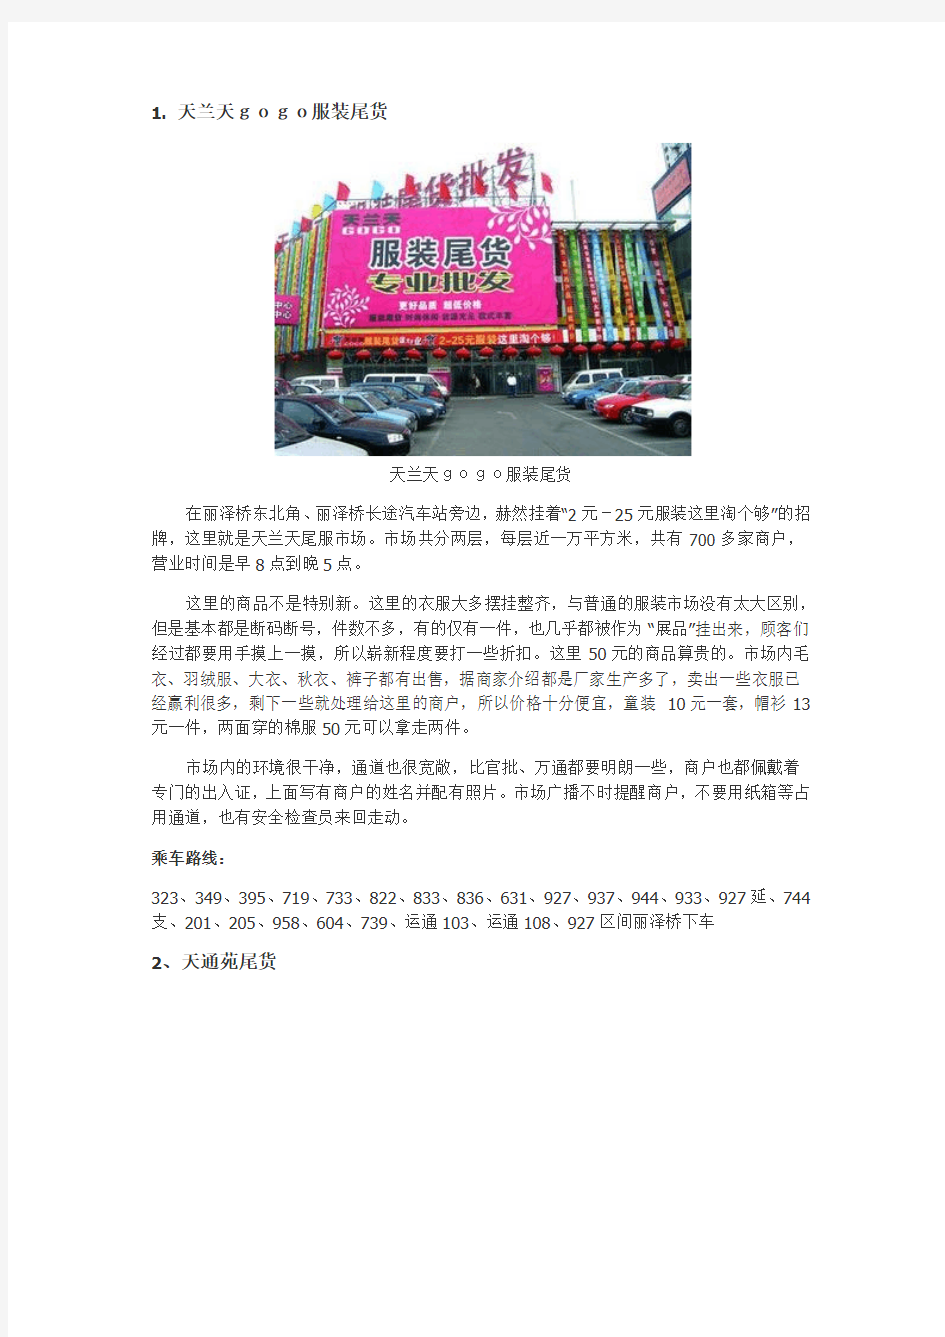 北京八大服装尾货市场